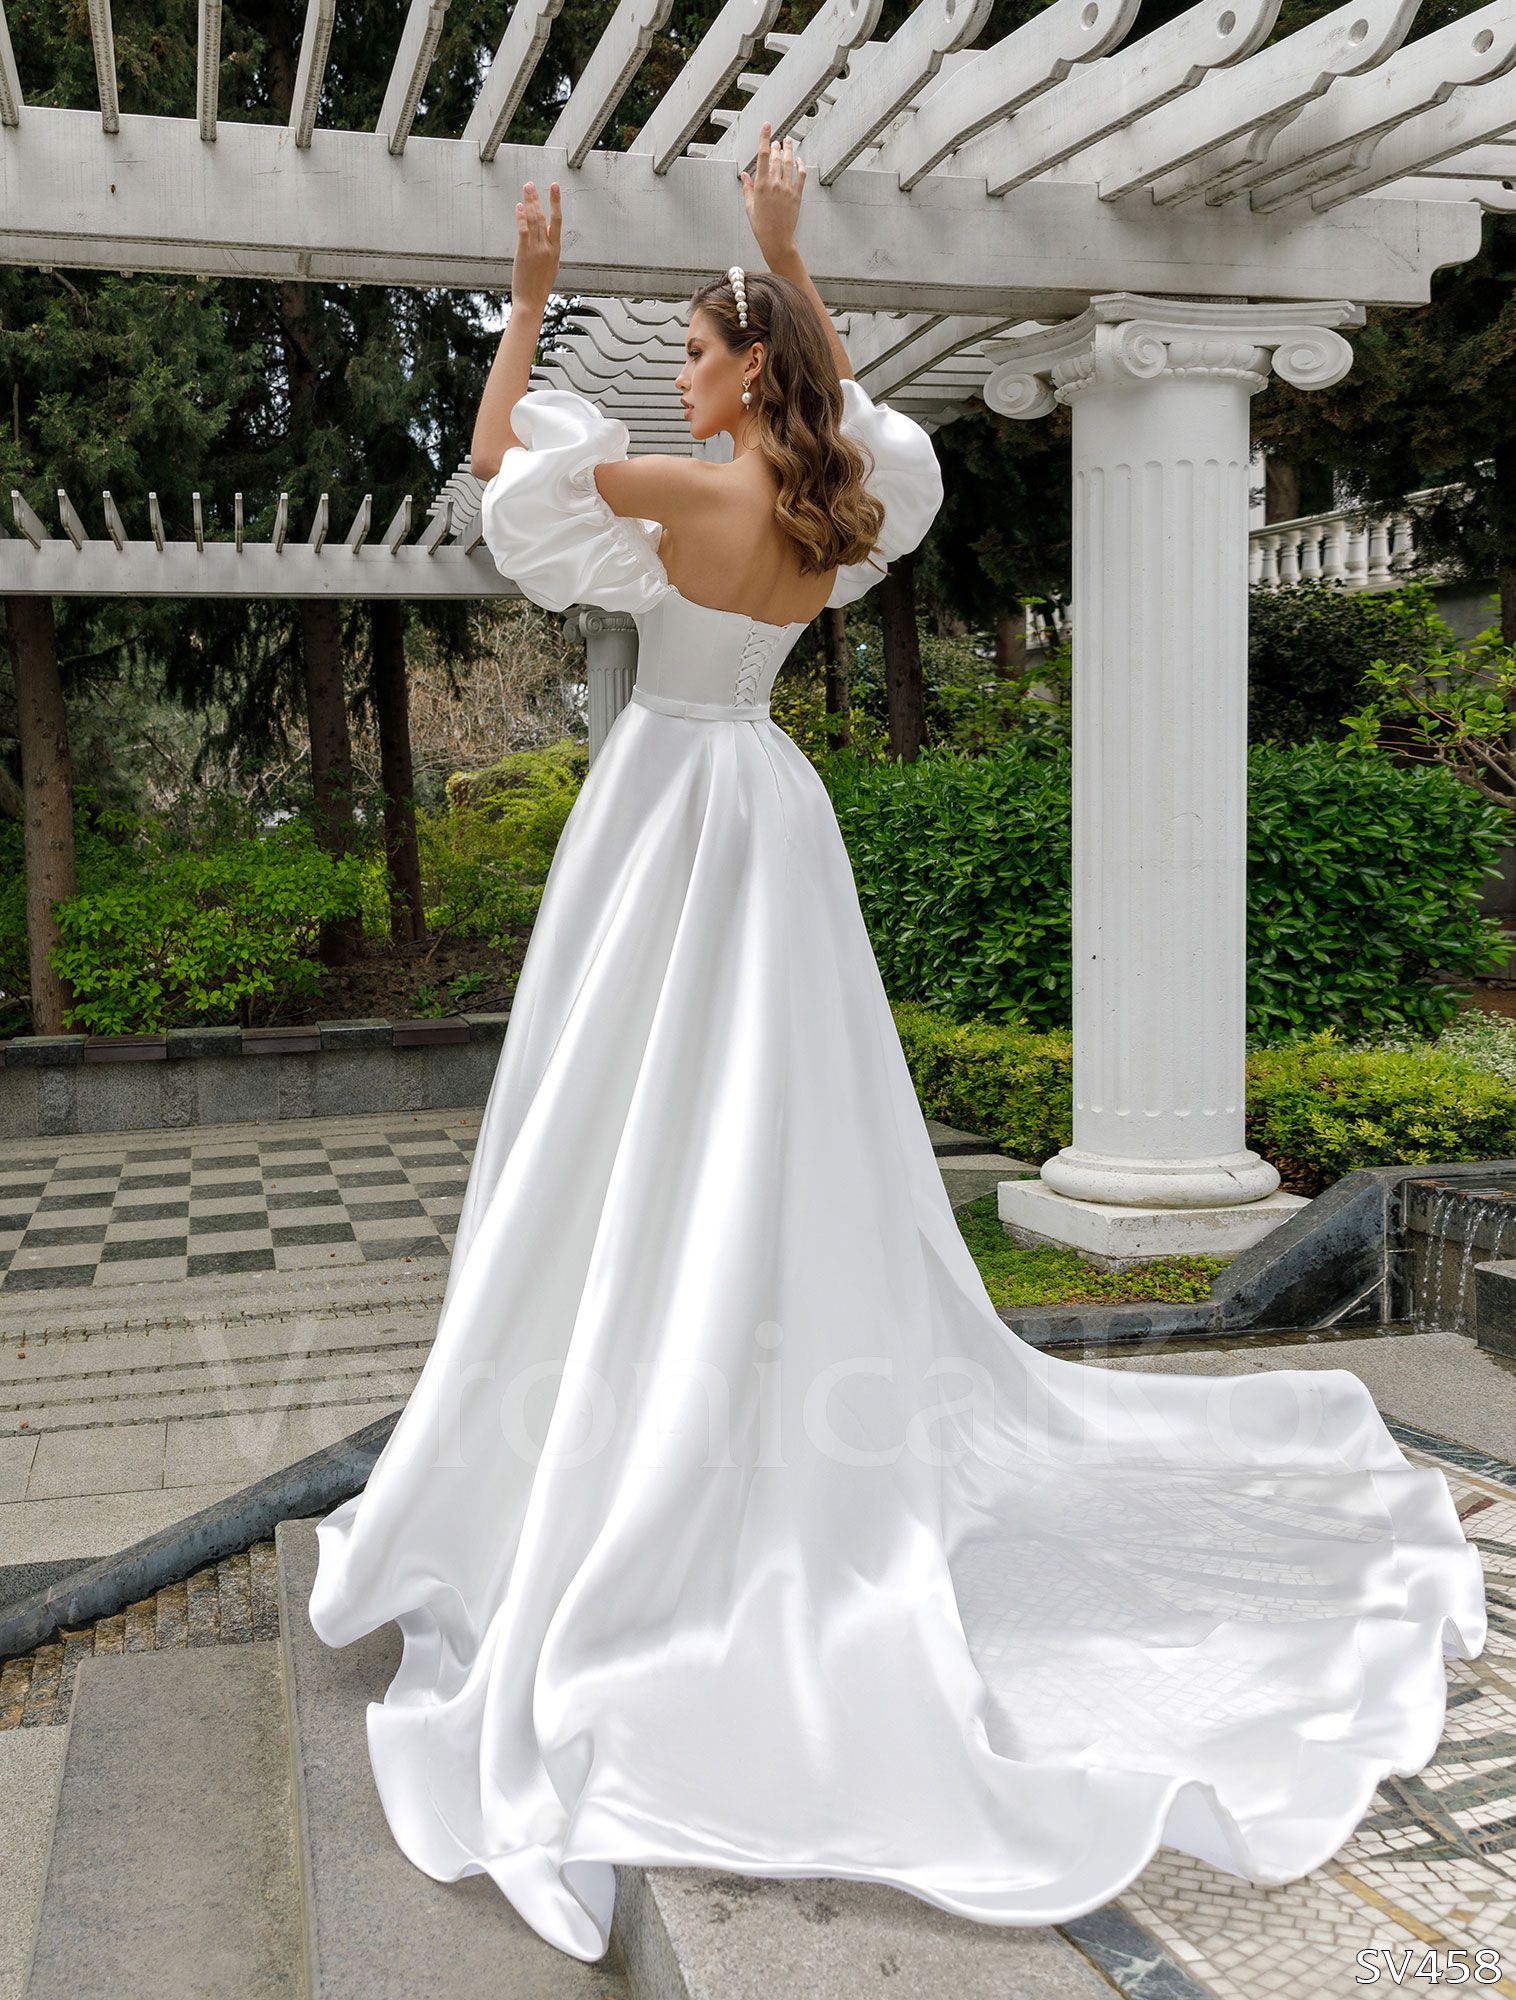 Купить свадебные платья Пышное С рукавами в СПб недорого